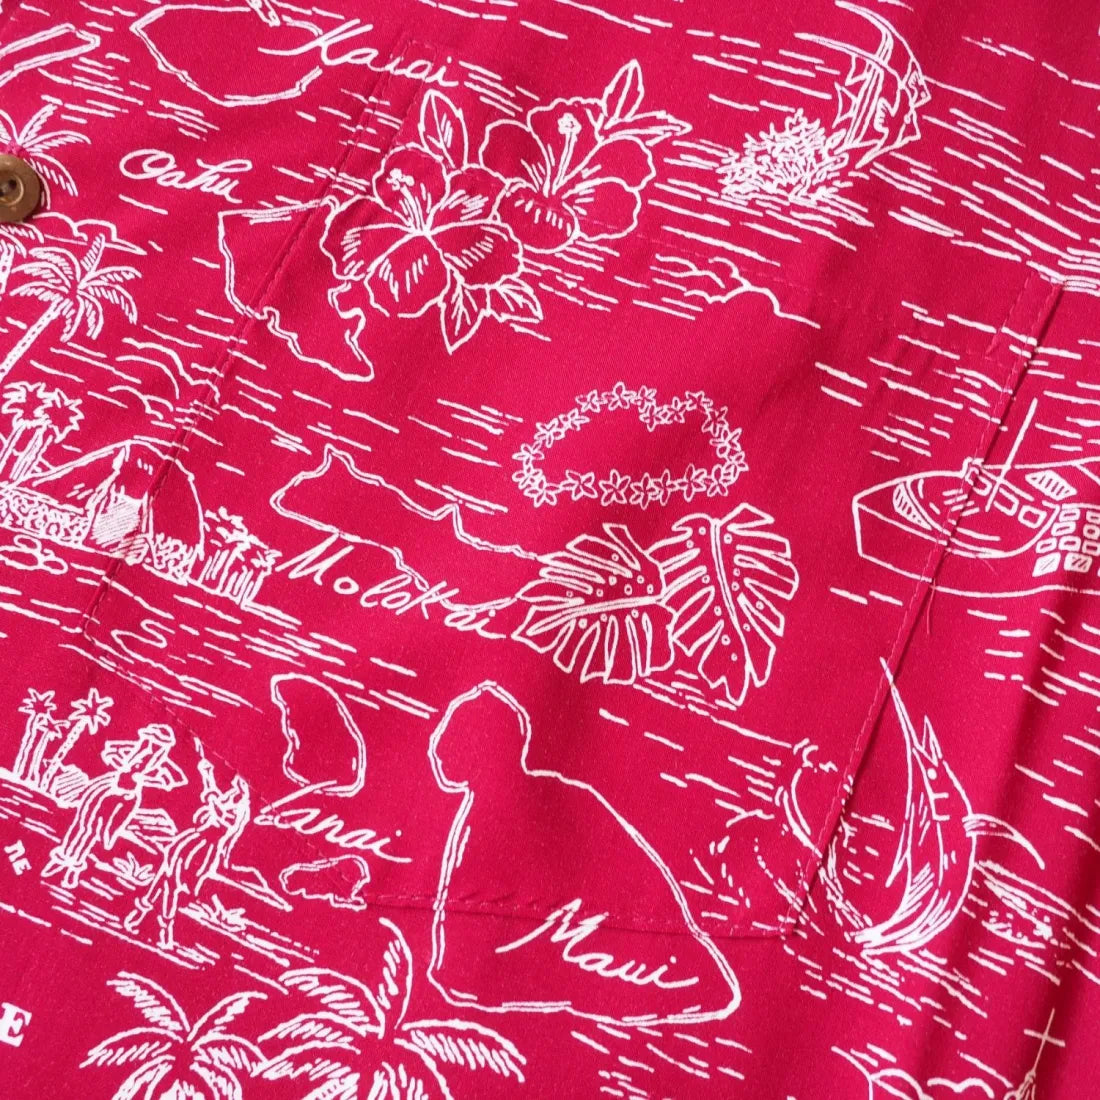 Island Cruise Red Hawaiian Rayon Shirt - Made In Hawaii